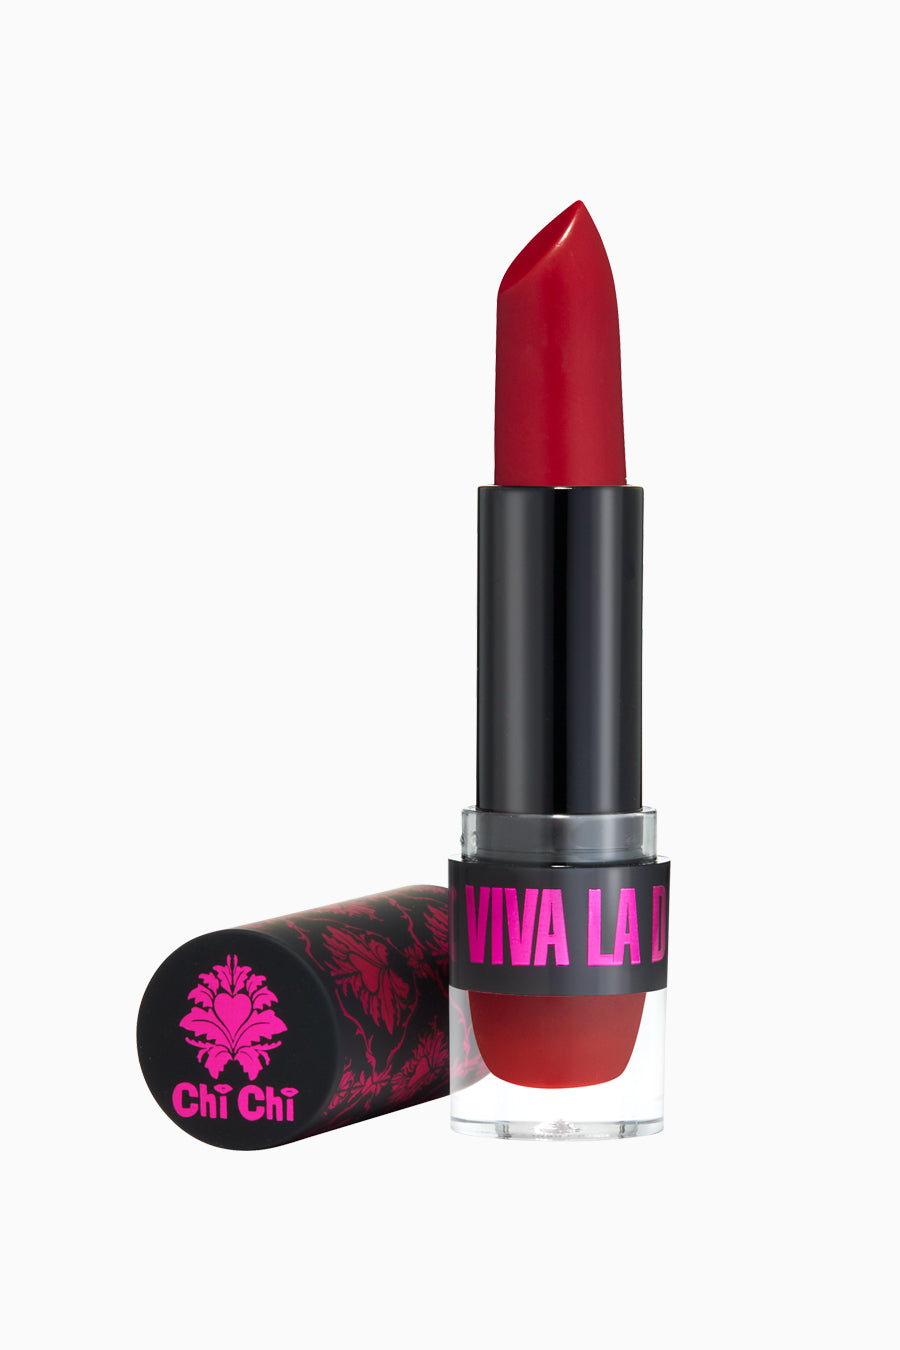 Viva La Diva – Chi Chi Cosmetics